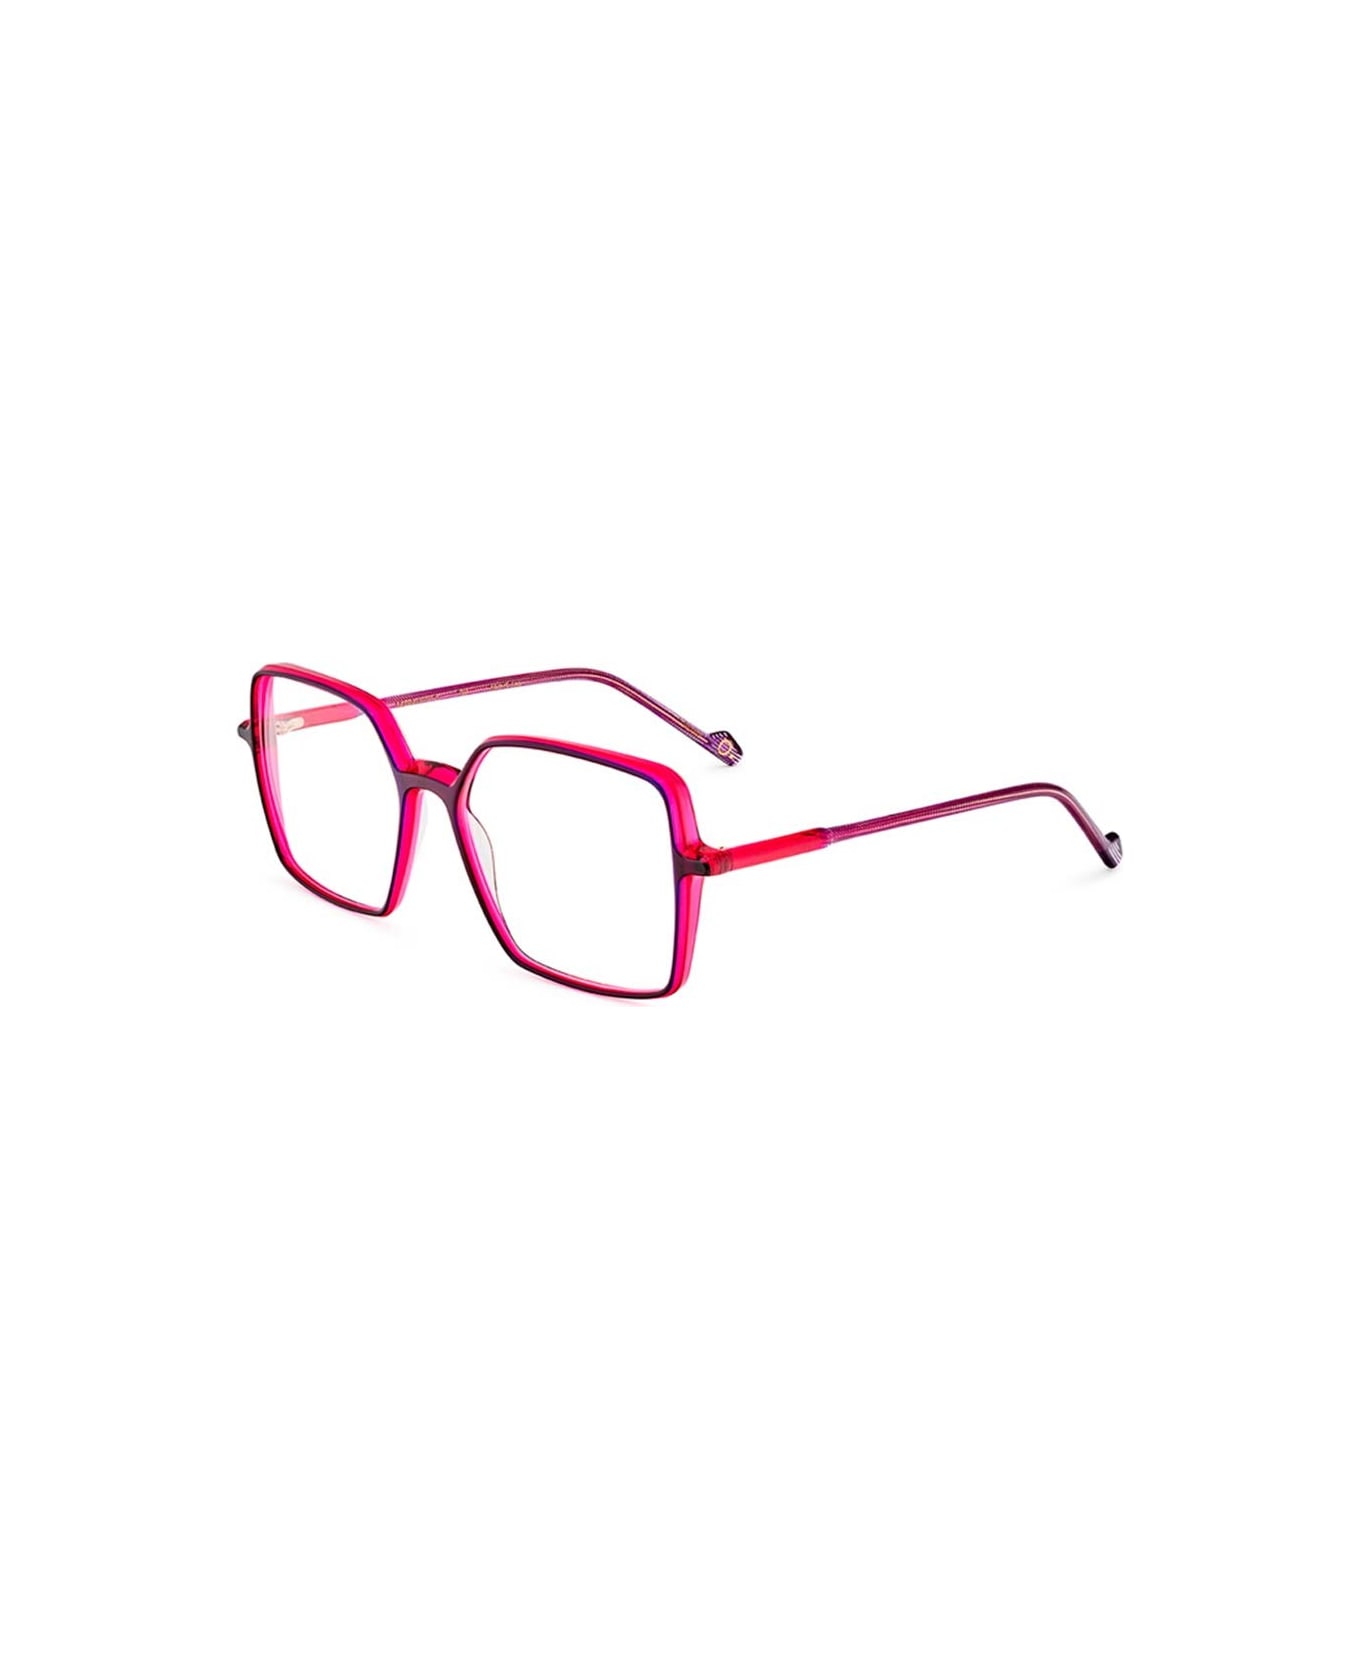 Etnia Barcelona Glasses - Fucsia アイウェア